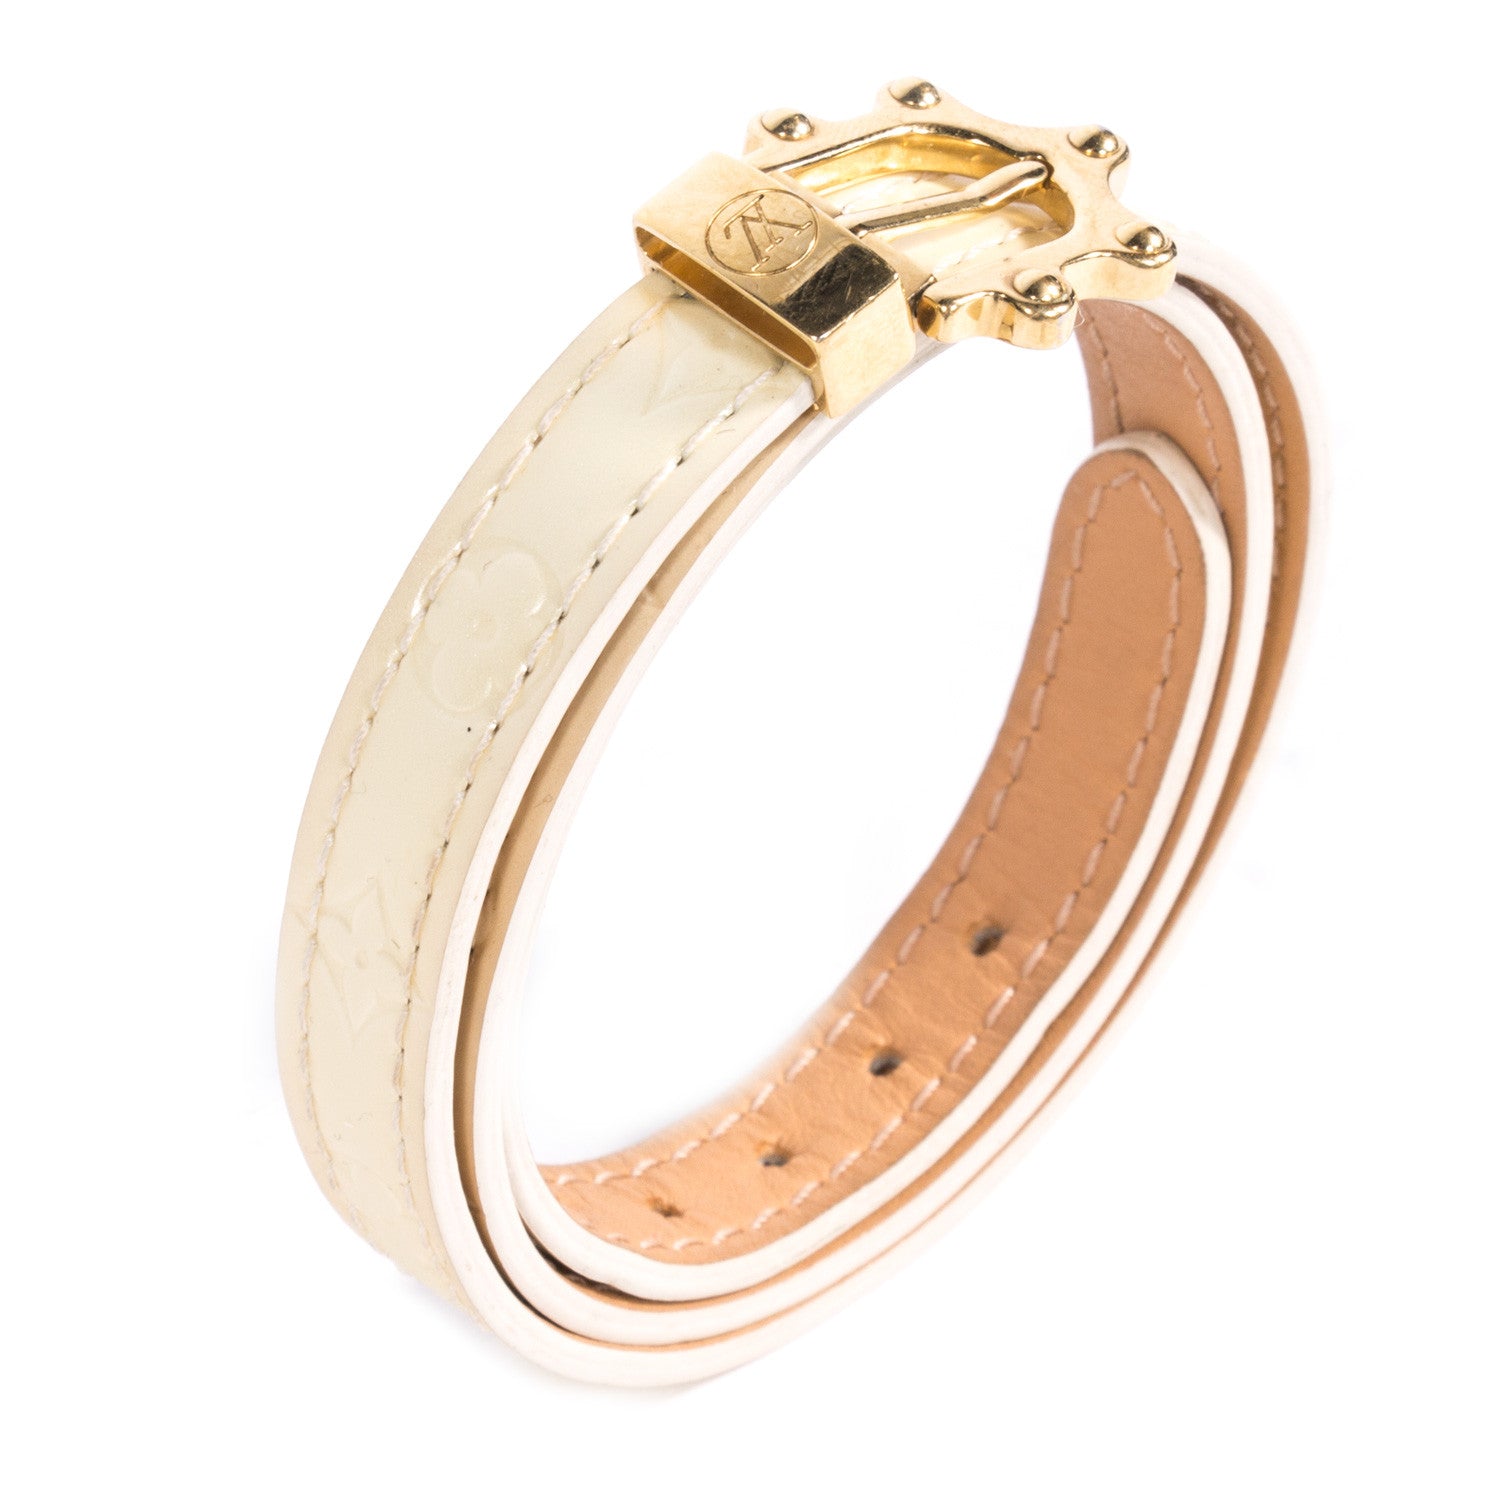 Shop authentic Louis Vuitton Wrap Bracelet at revogue for just USD